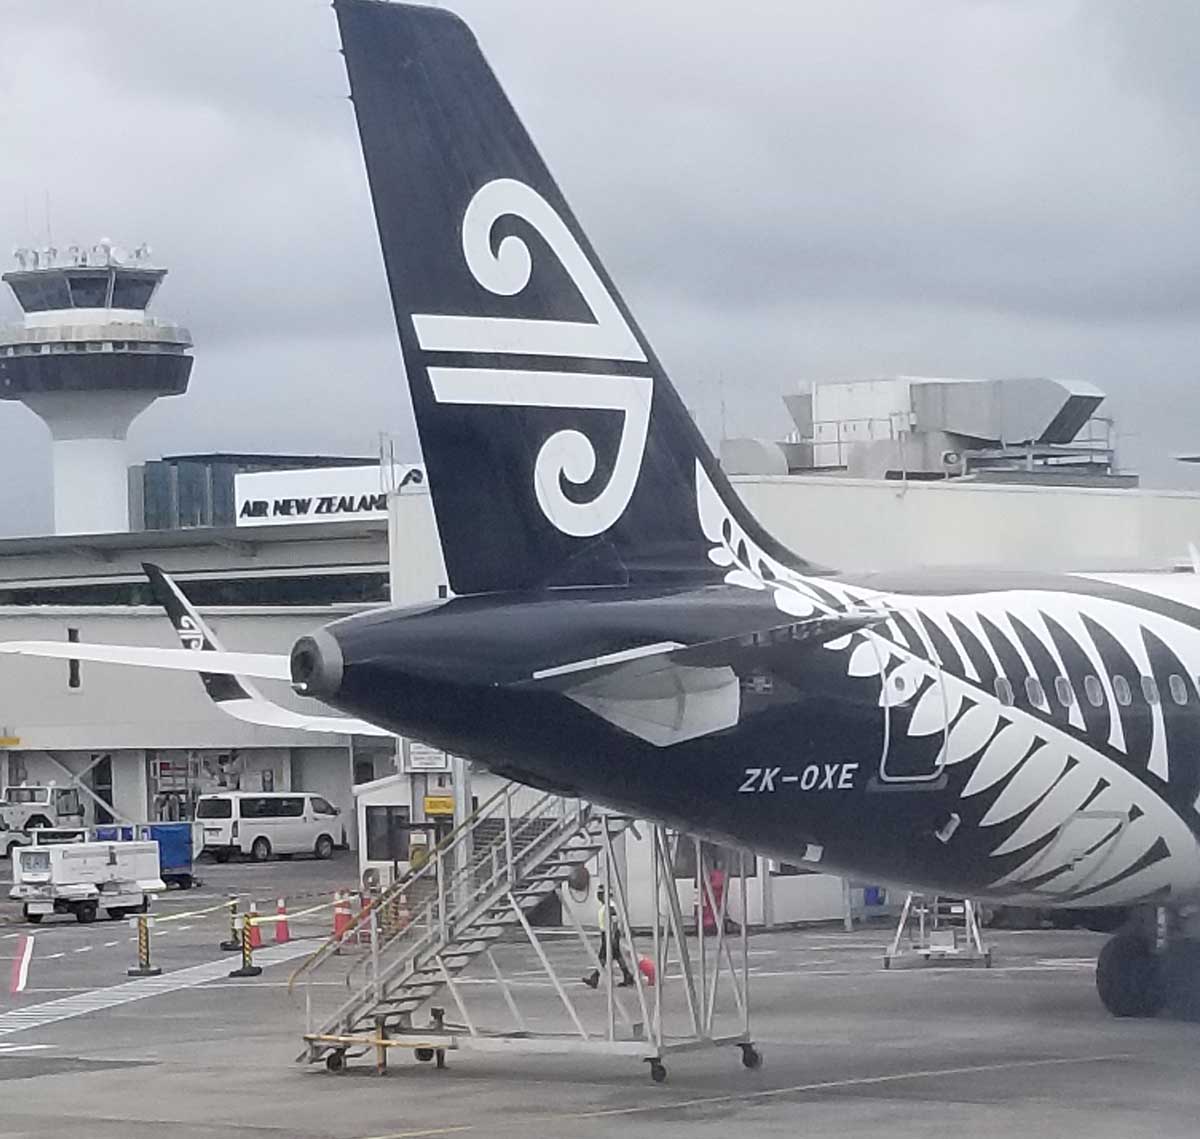 Air New Zealand-Silver Fern motif